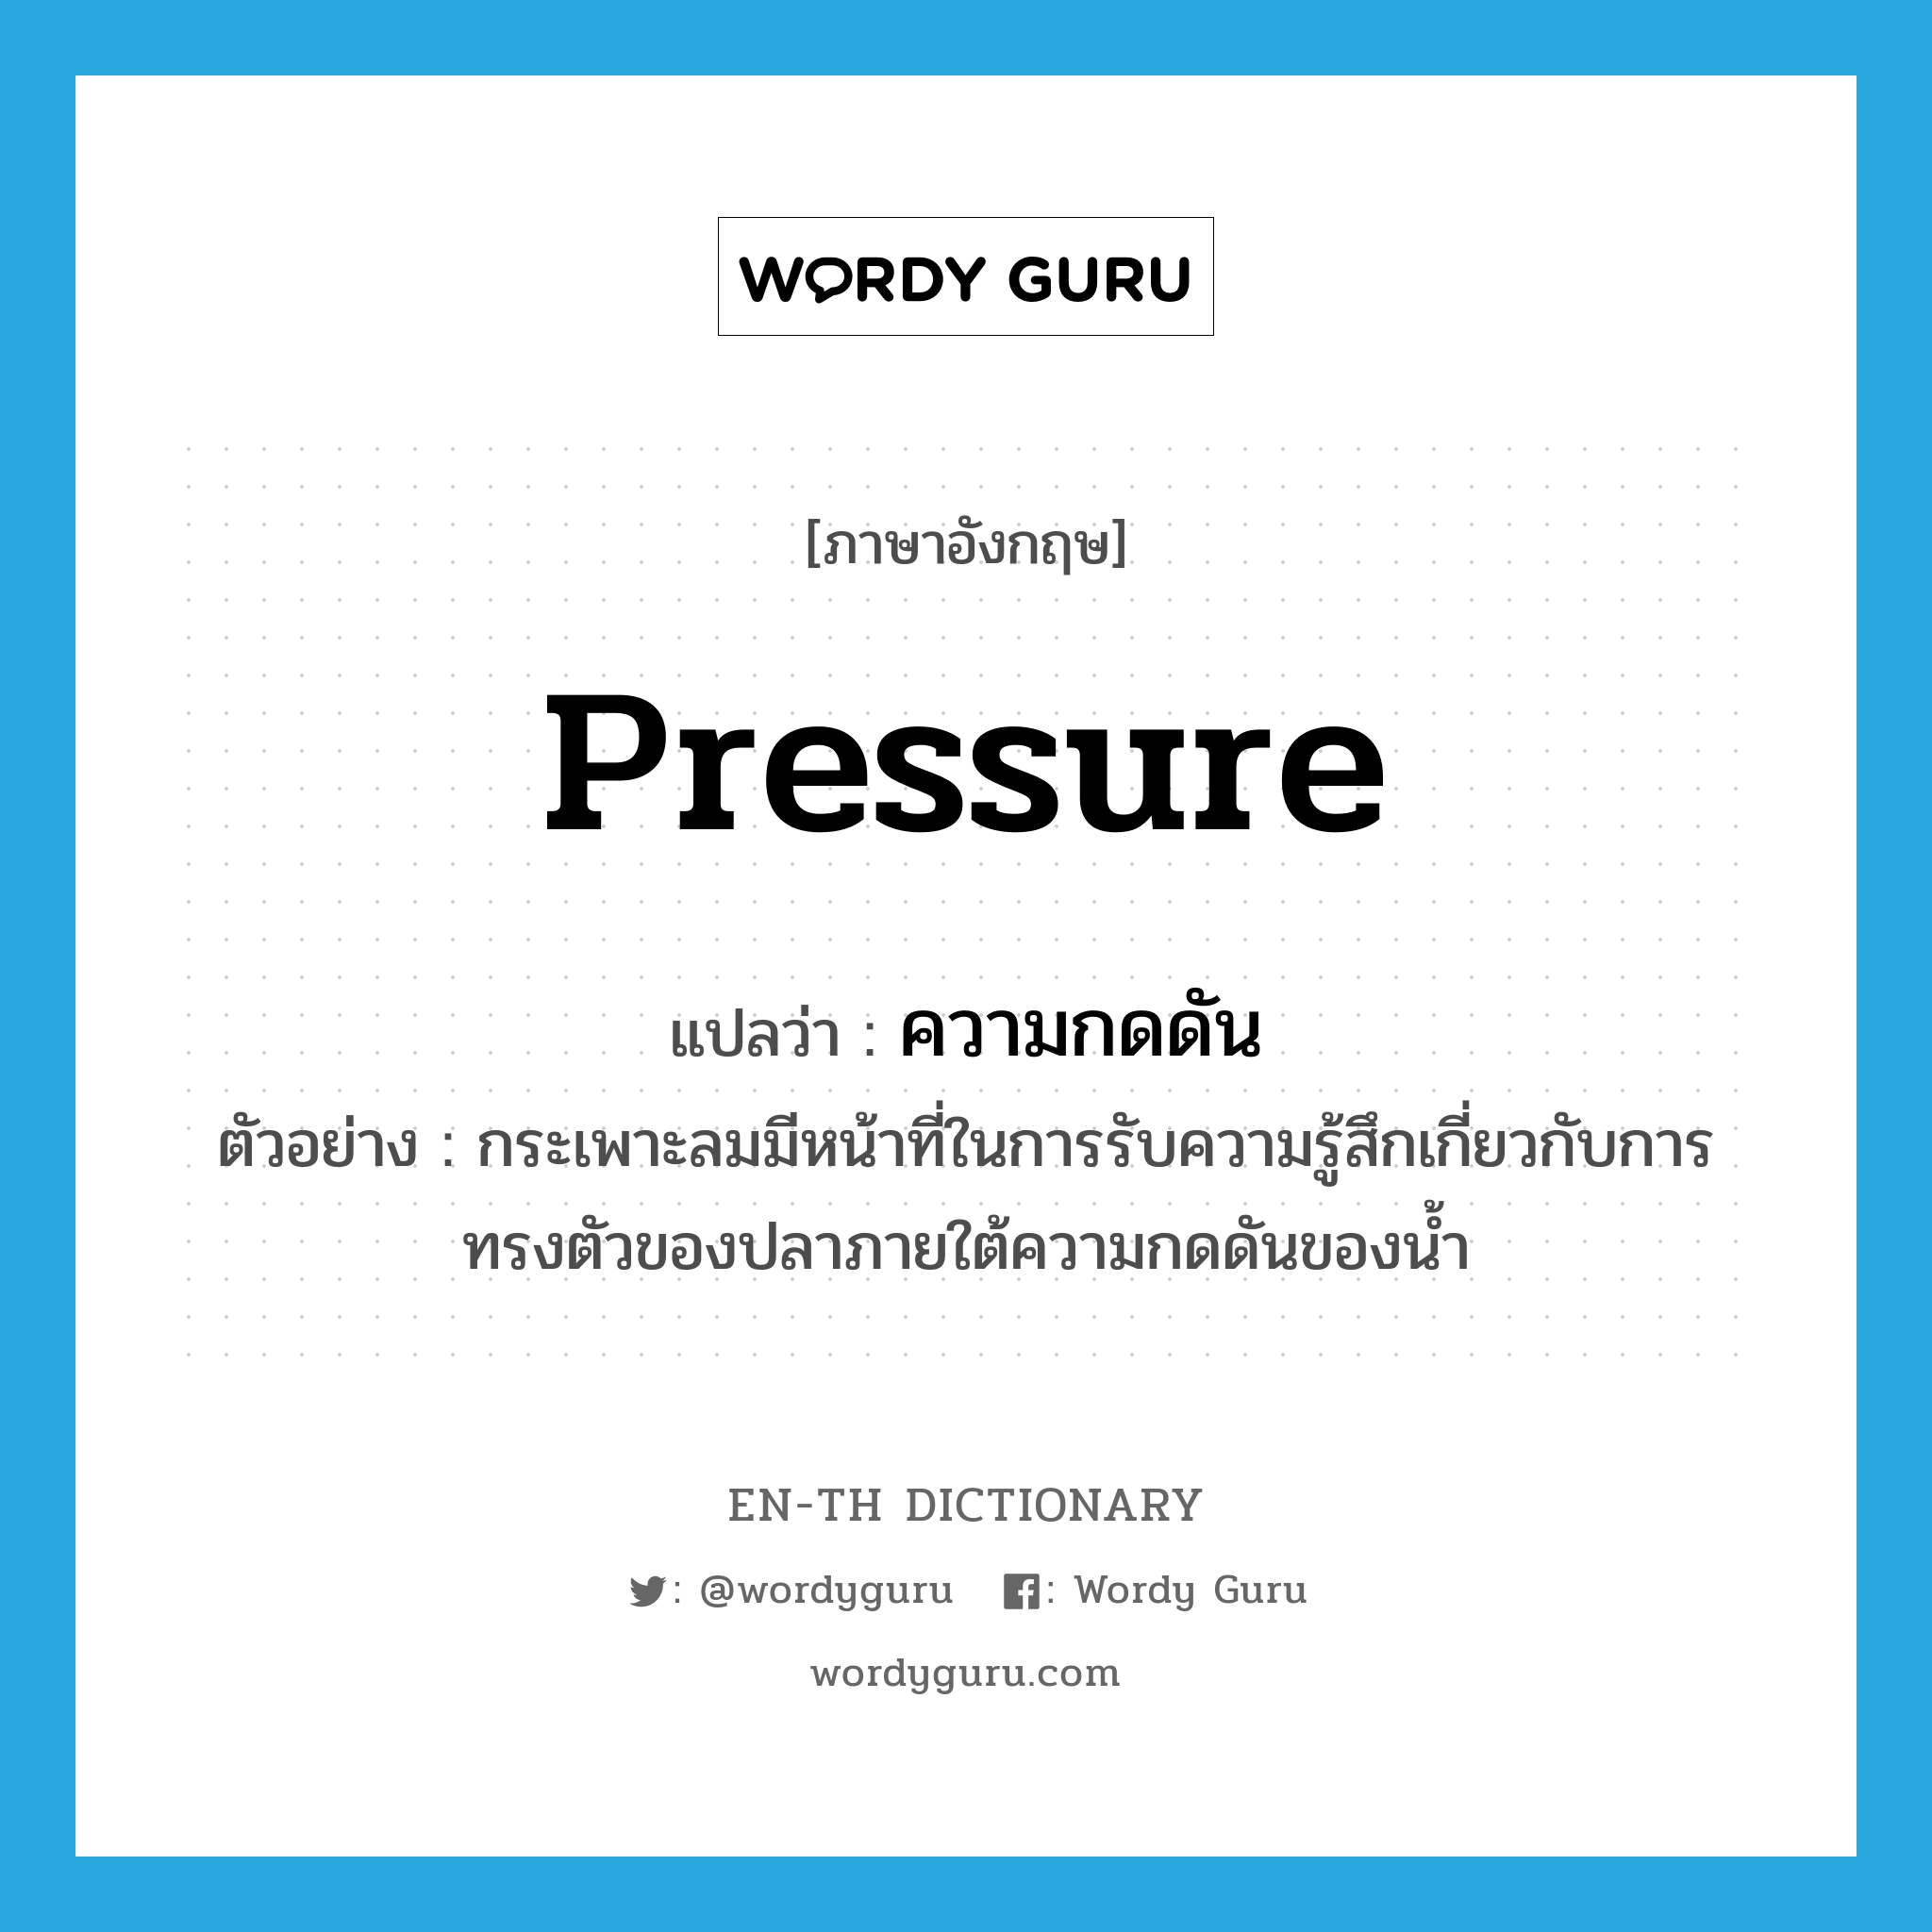 pressure แปลว่า?, คำศัพท์ภาษาอังกฤษ pressure แปลว่า ความกดดัน ประเภท N ตัวอย่าง กระเพาะลมมีหน้าที่ในการรับความรู้สึกเกี่ยวกับการทรงตัวของปลาภายใต้ความกดดันของน้ำ หมวด N